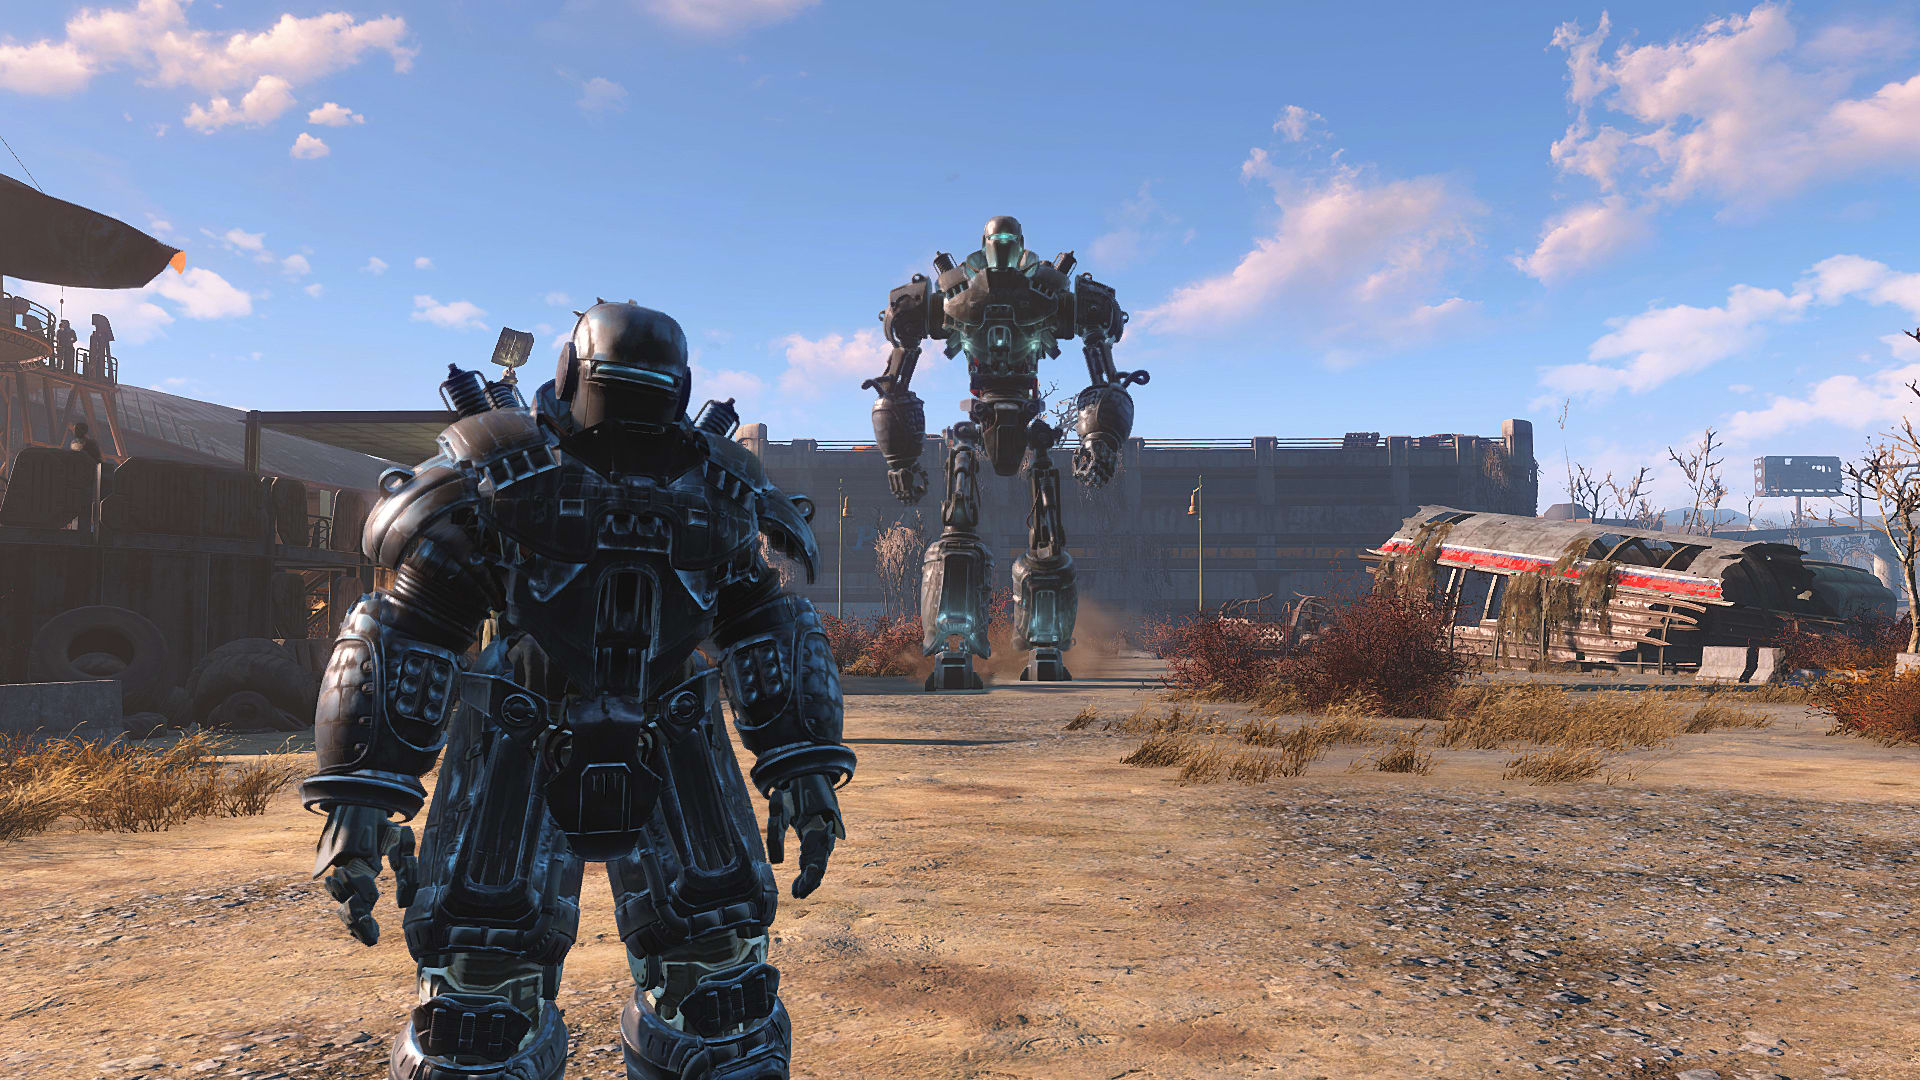 Fallout 4 верстак для роботов все модификации фото 43